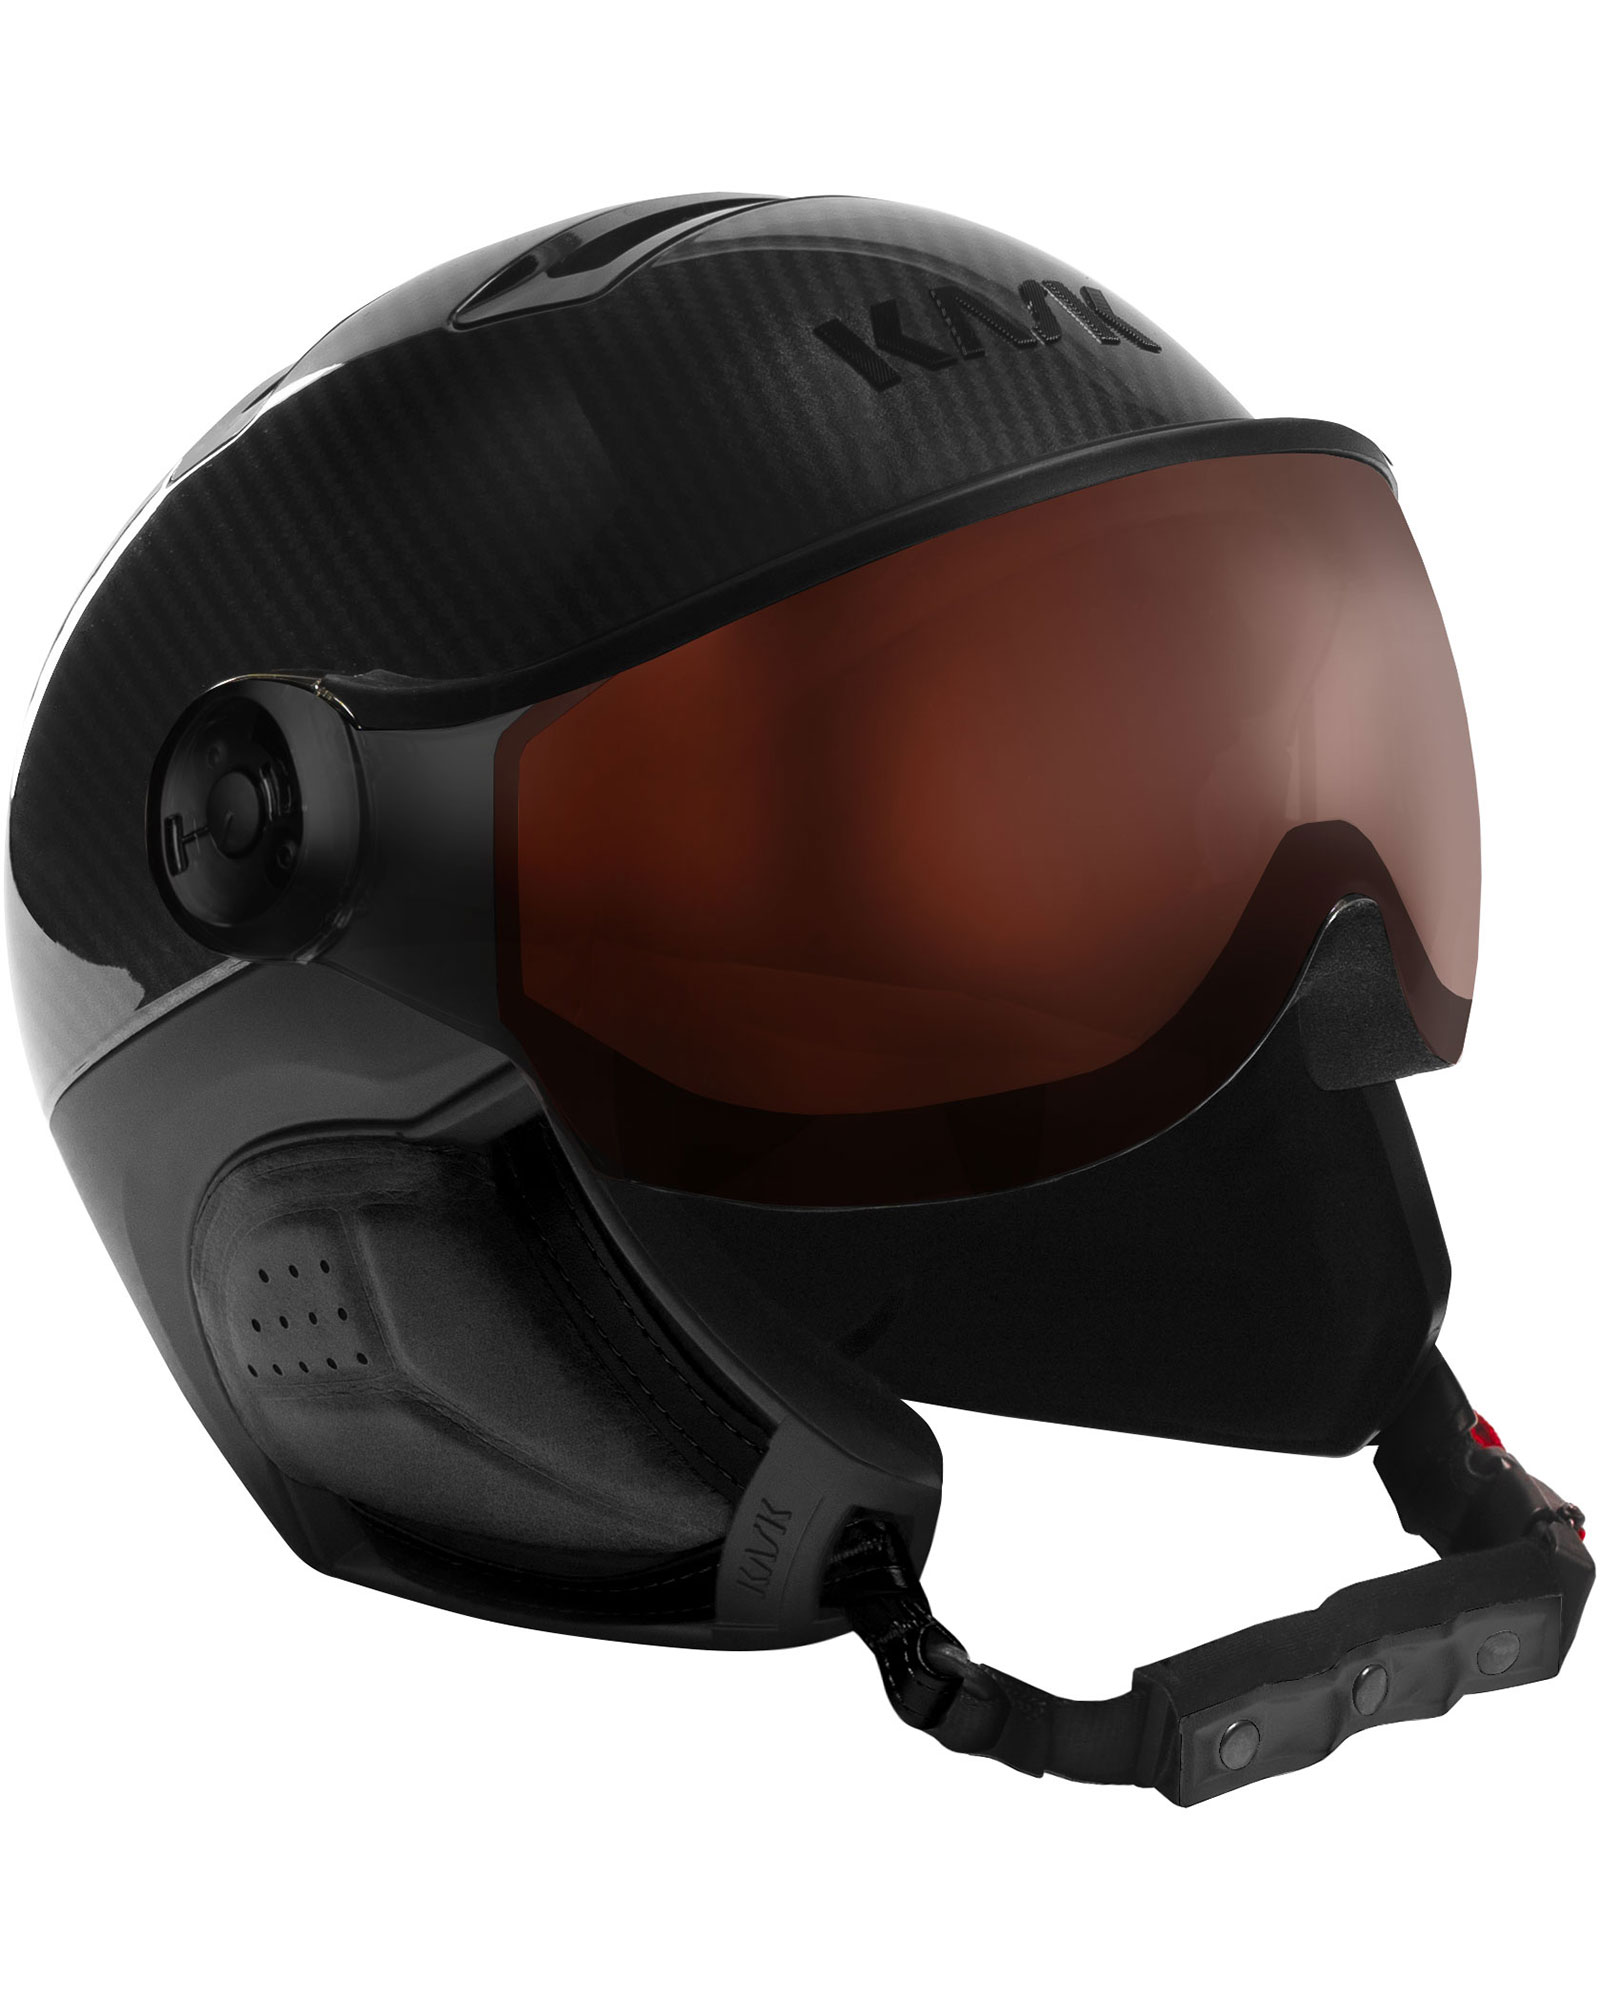 KASK Elite Pro Visor Helmet - Carbon Black - Photochromic Visor S